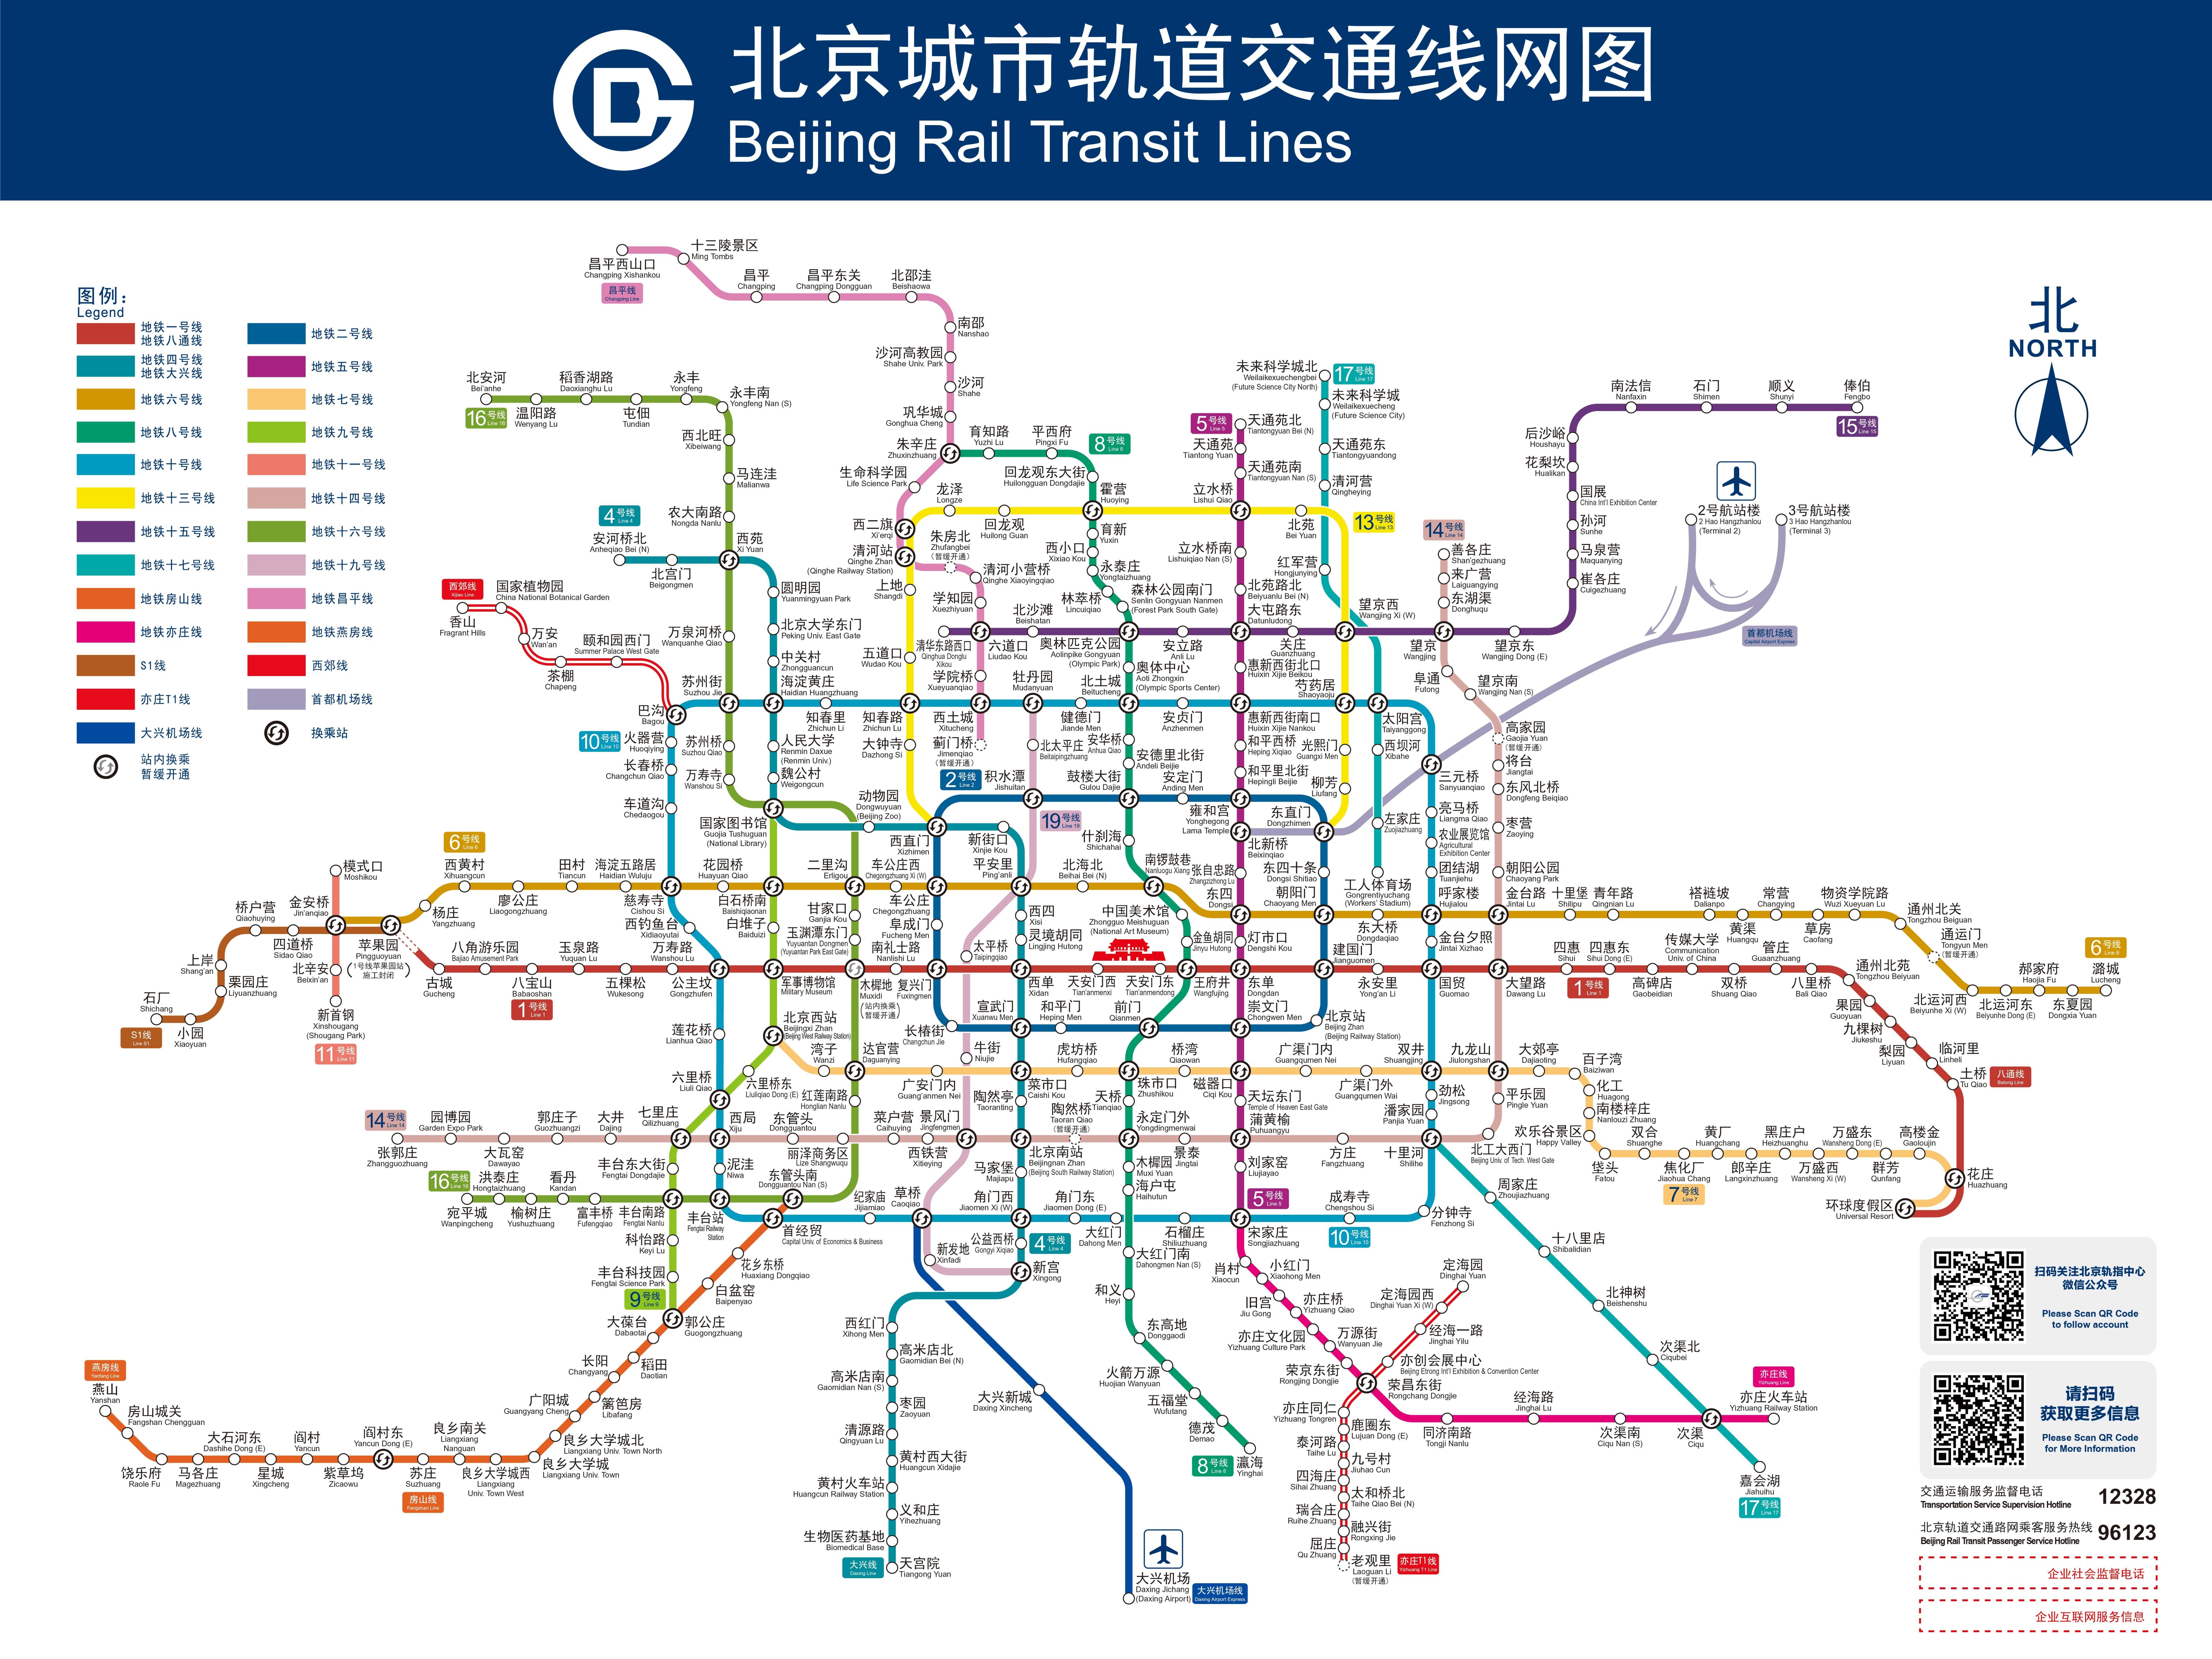 北京明天开通三段地铁线,新线路图请收藏